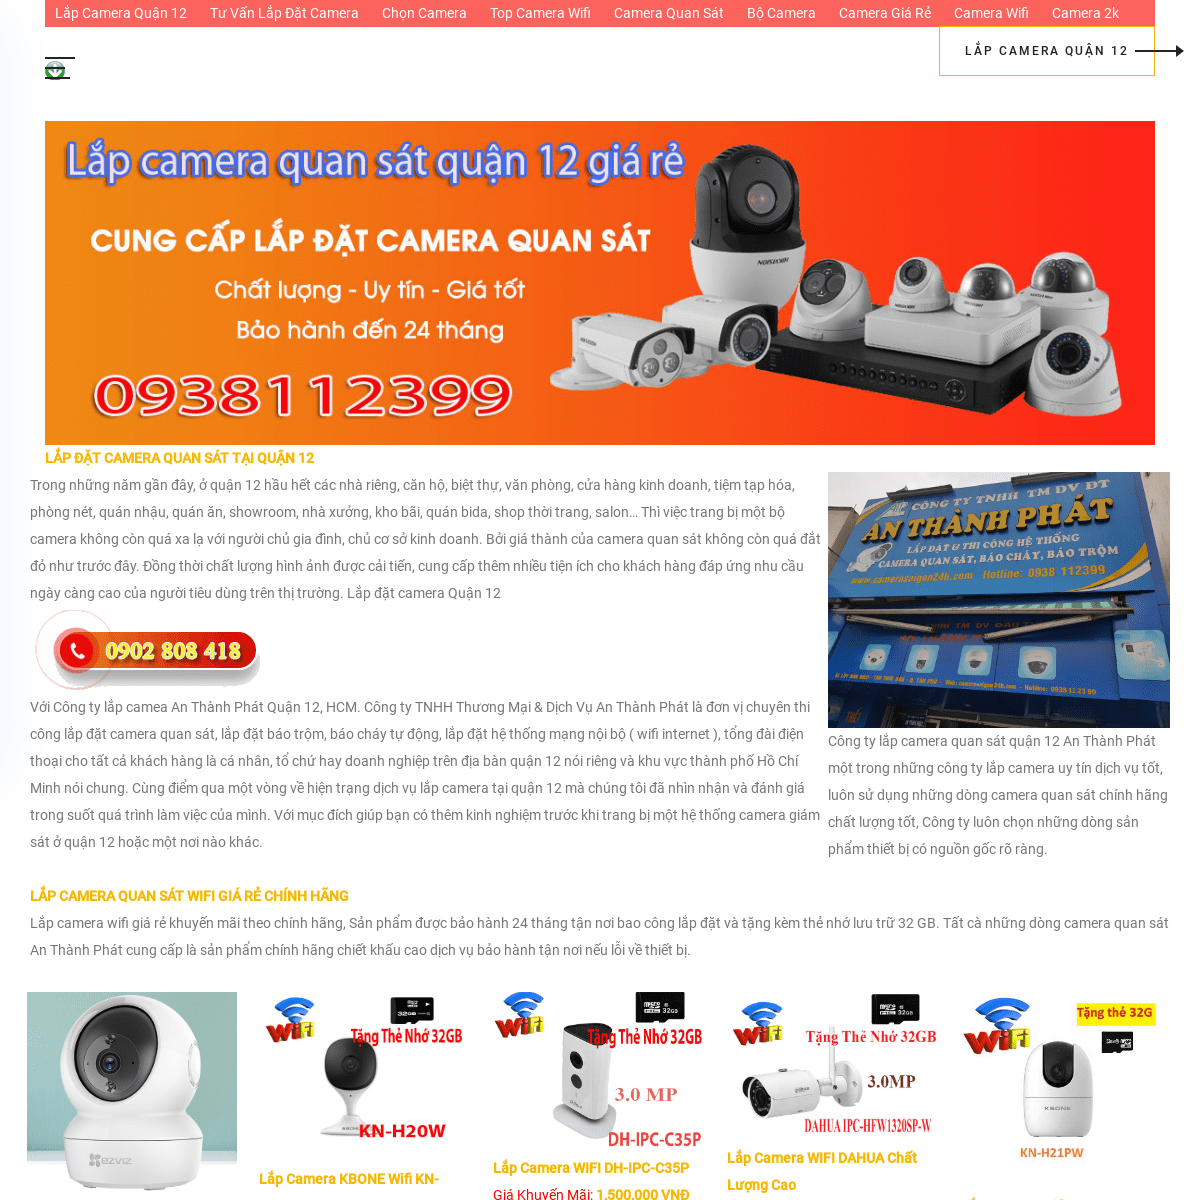 A complete backup of cameraquan12.com